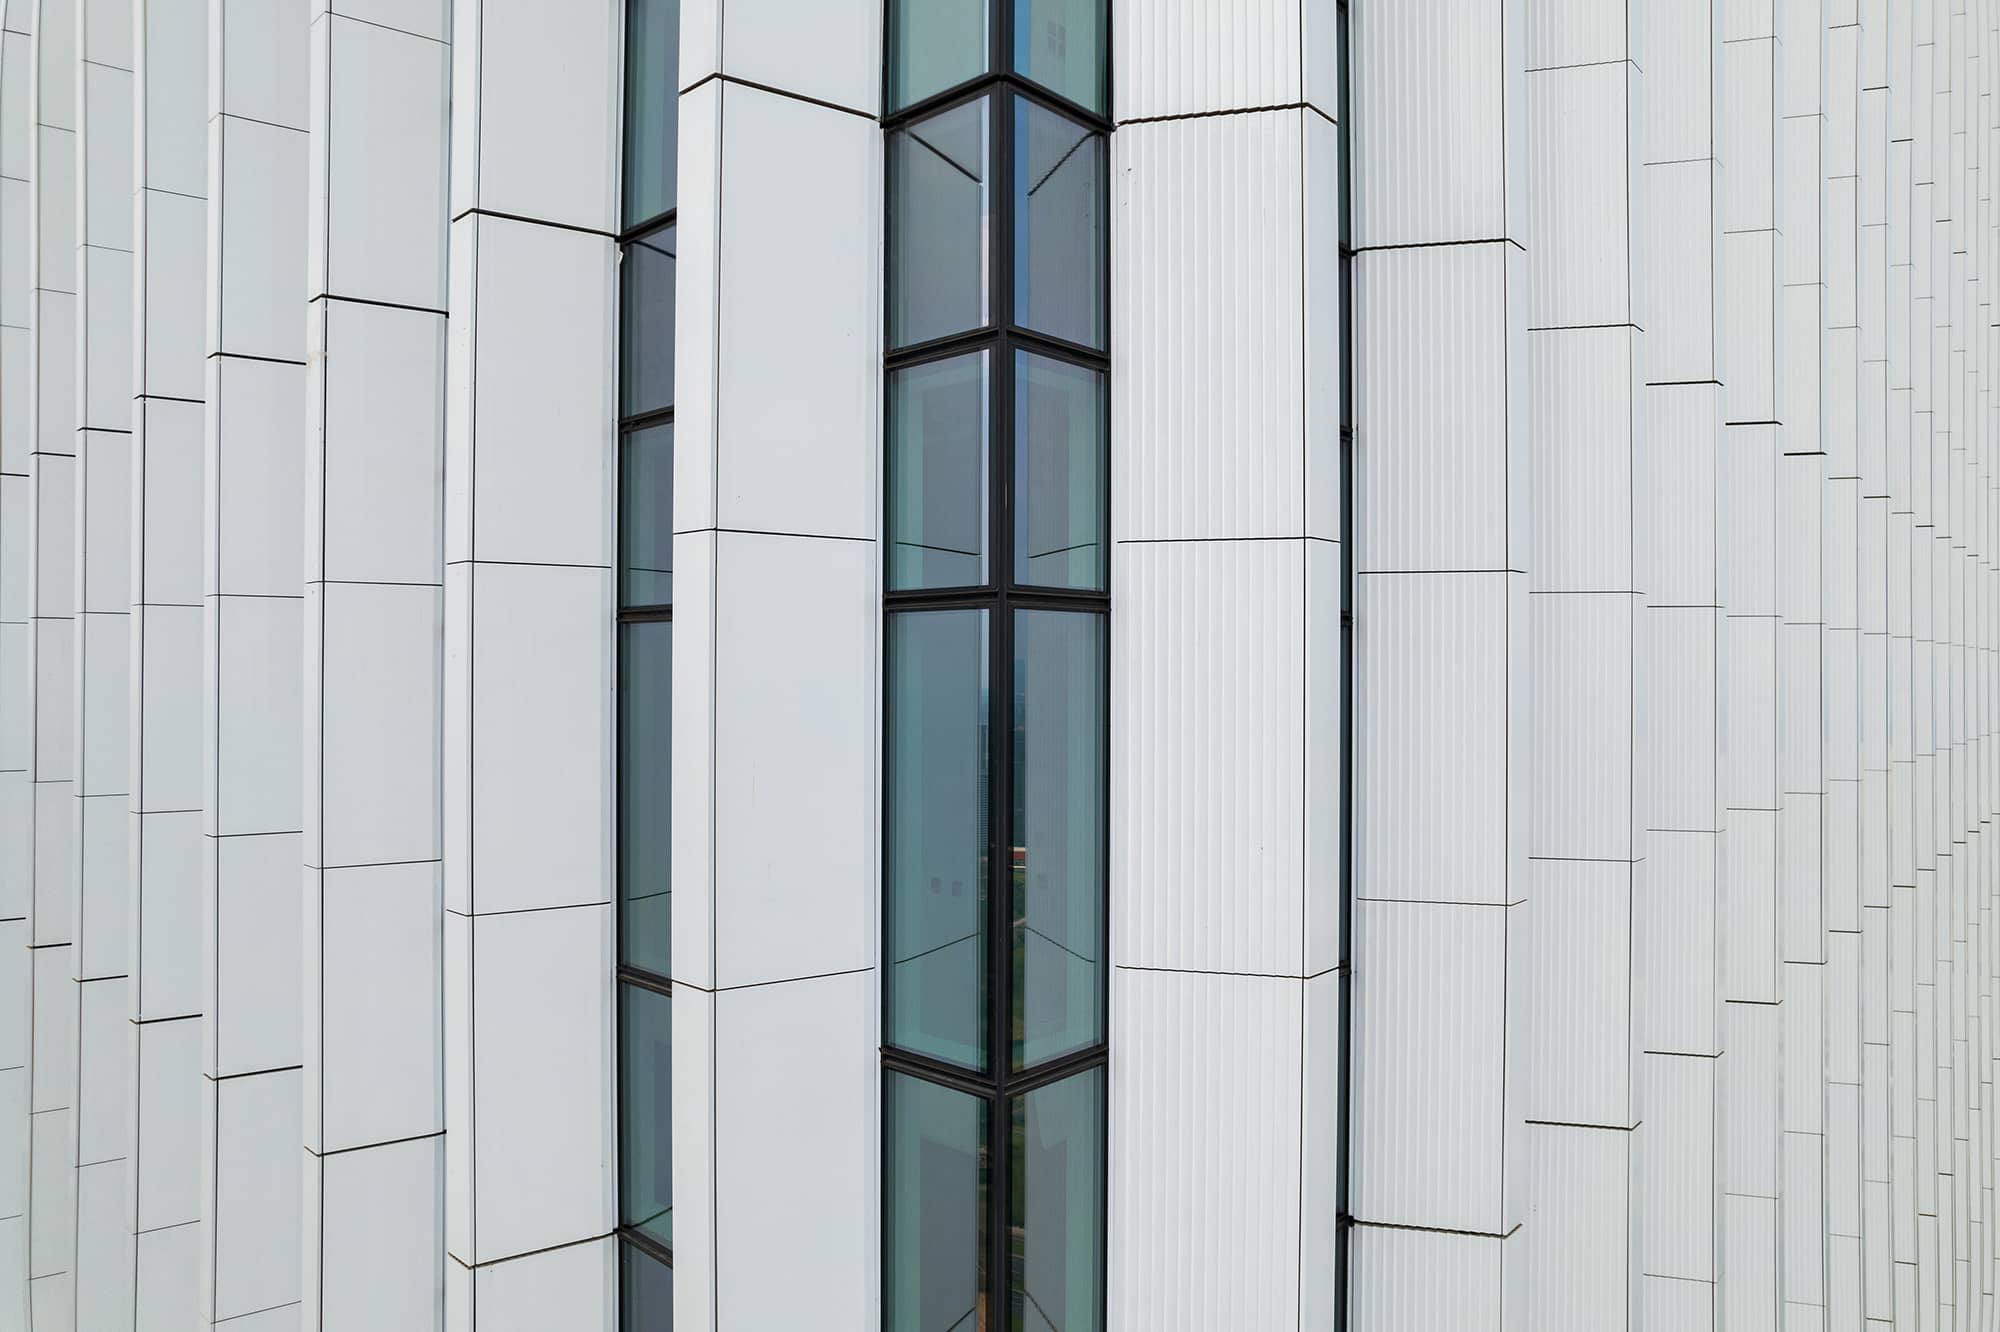 High-rise Building in glazed terracotta.jpg